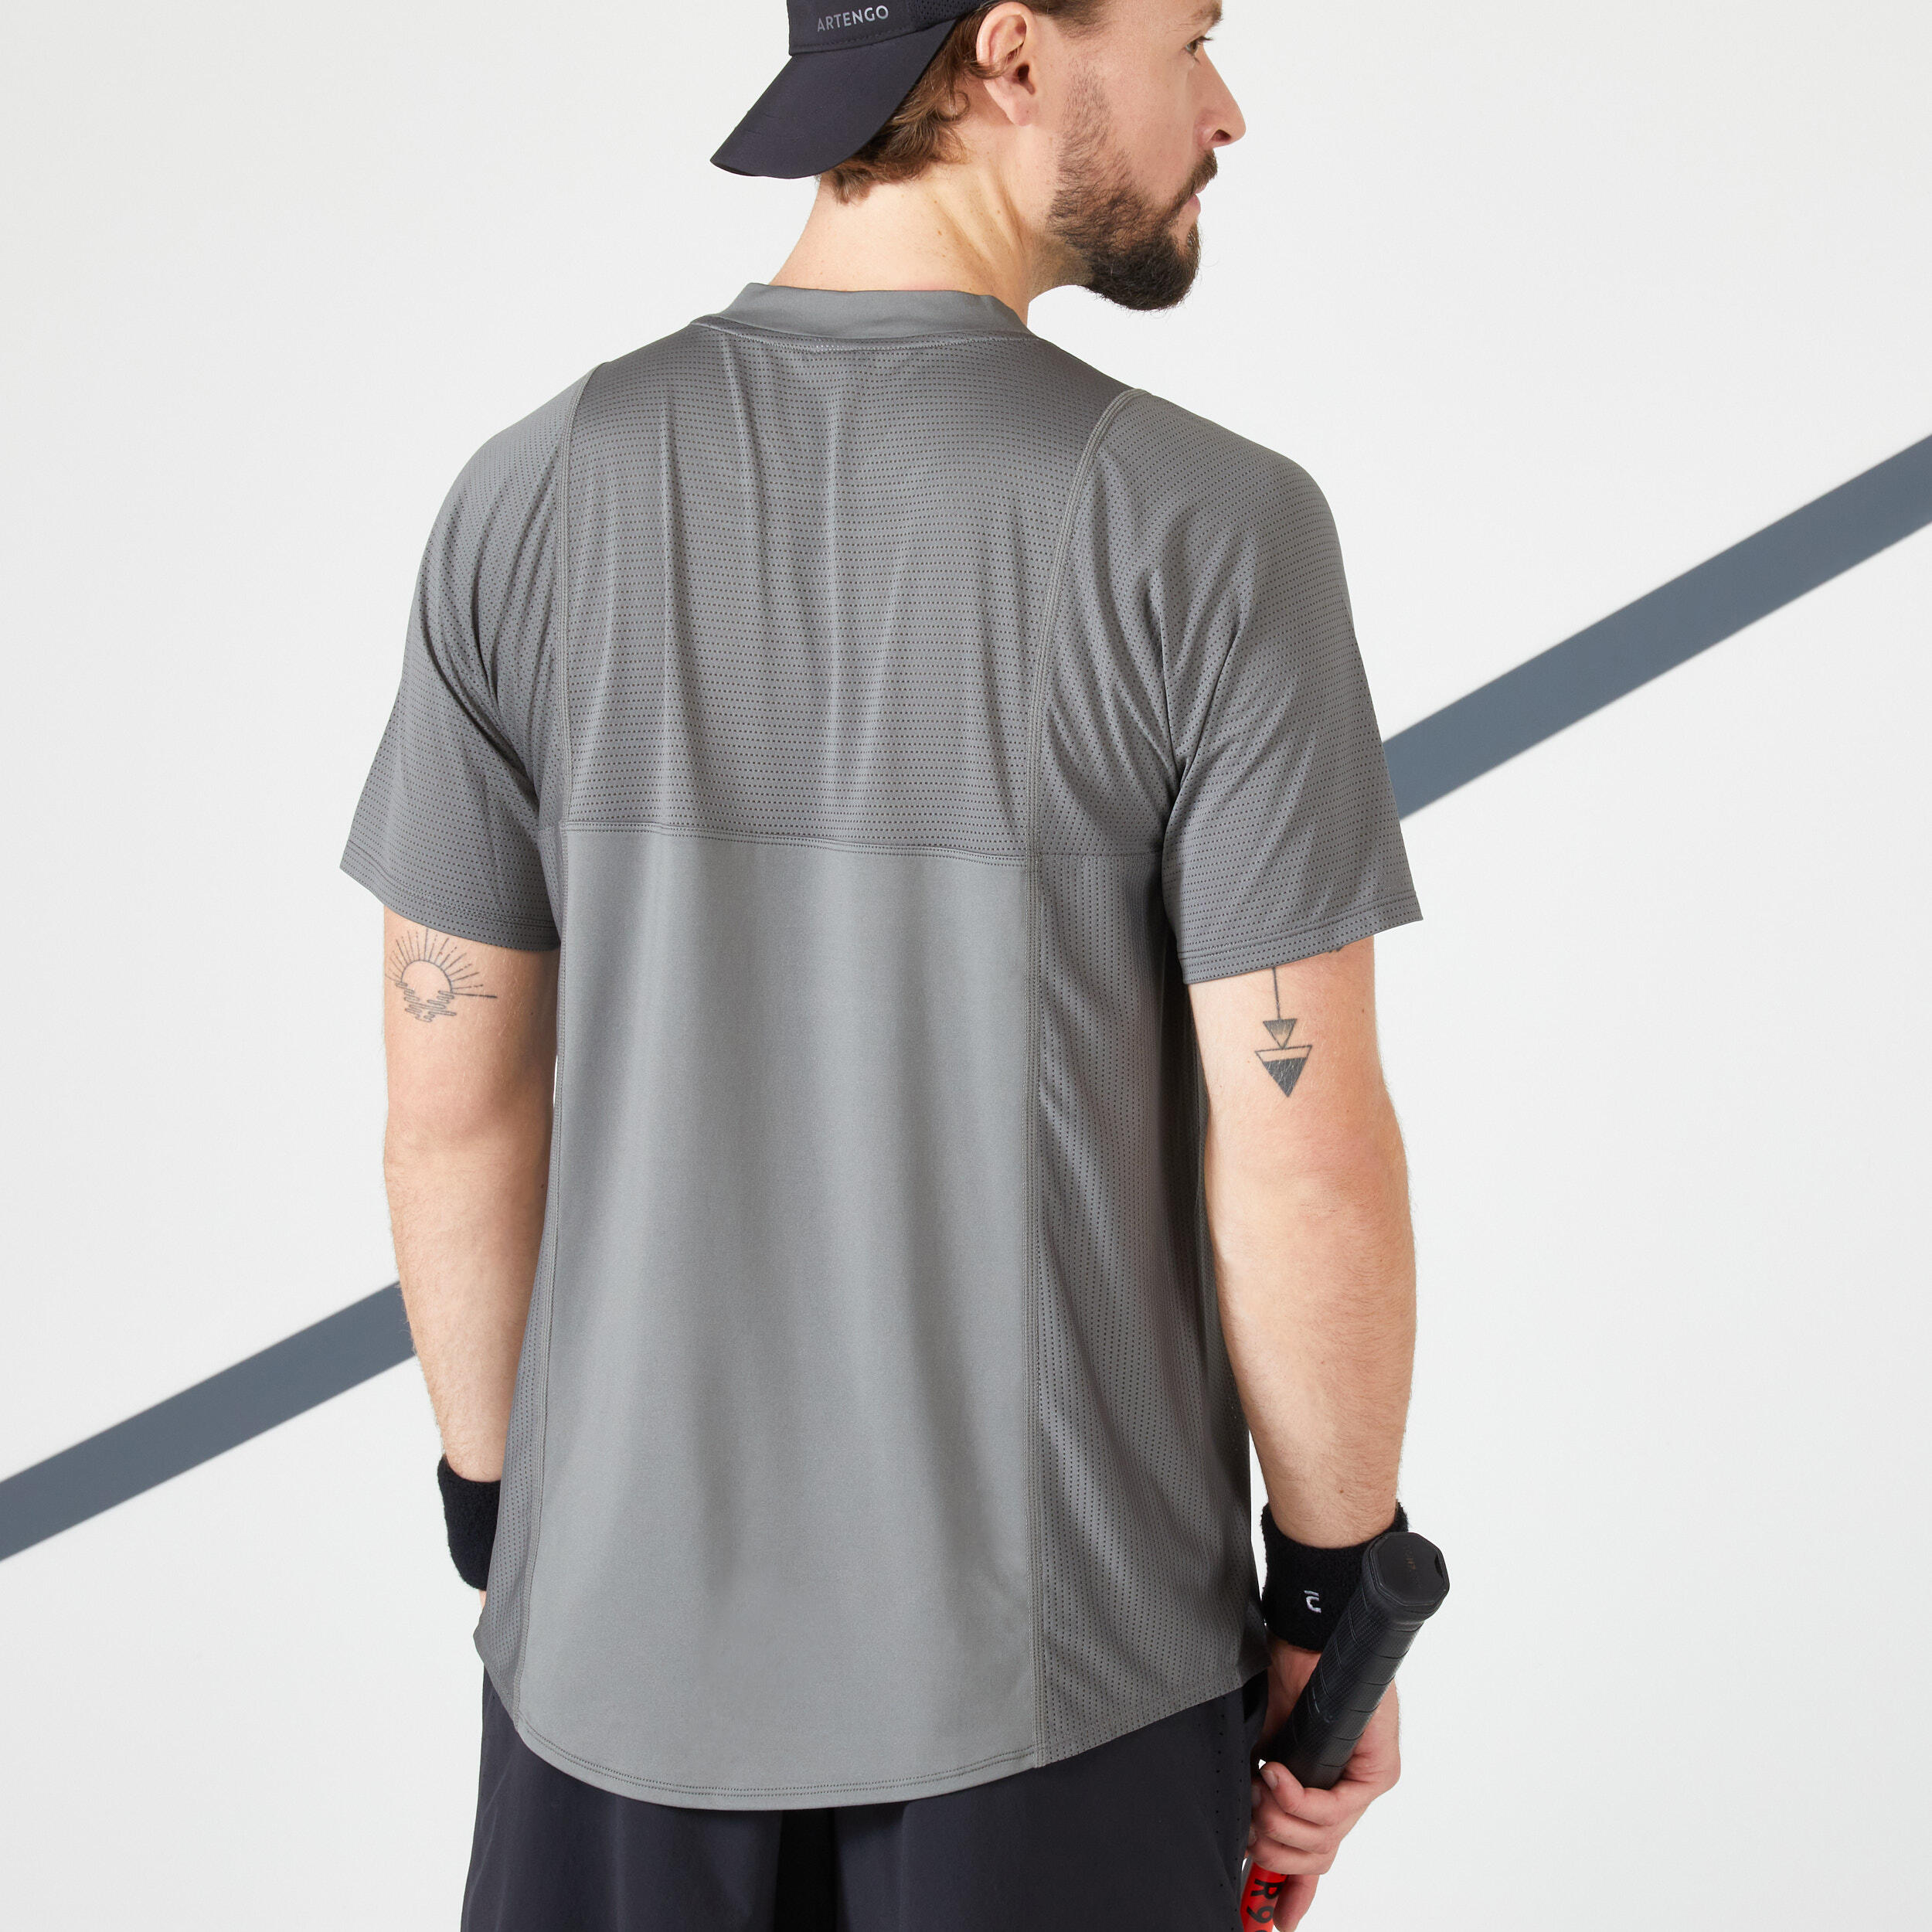 Men's Tennis Short-Sleeved T-Shirt Dry VN - Khaki/Black 6/11